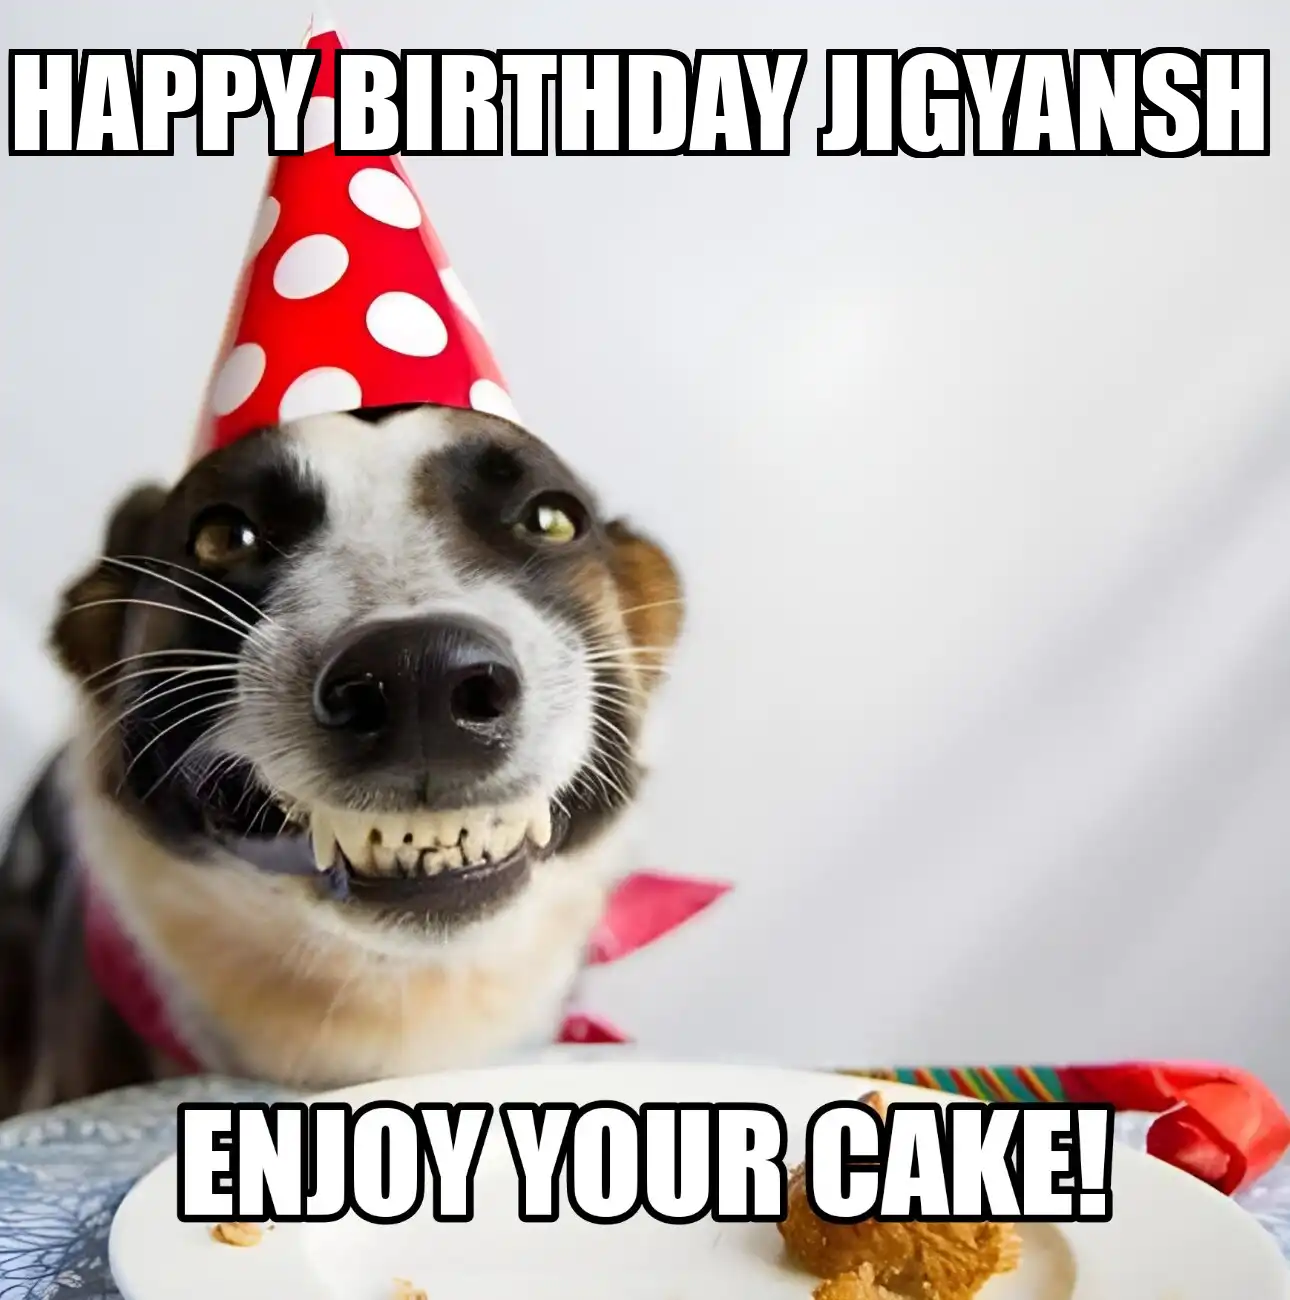 Happy Birthday Jigyansh Enjoy Your Cake Dog Meme